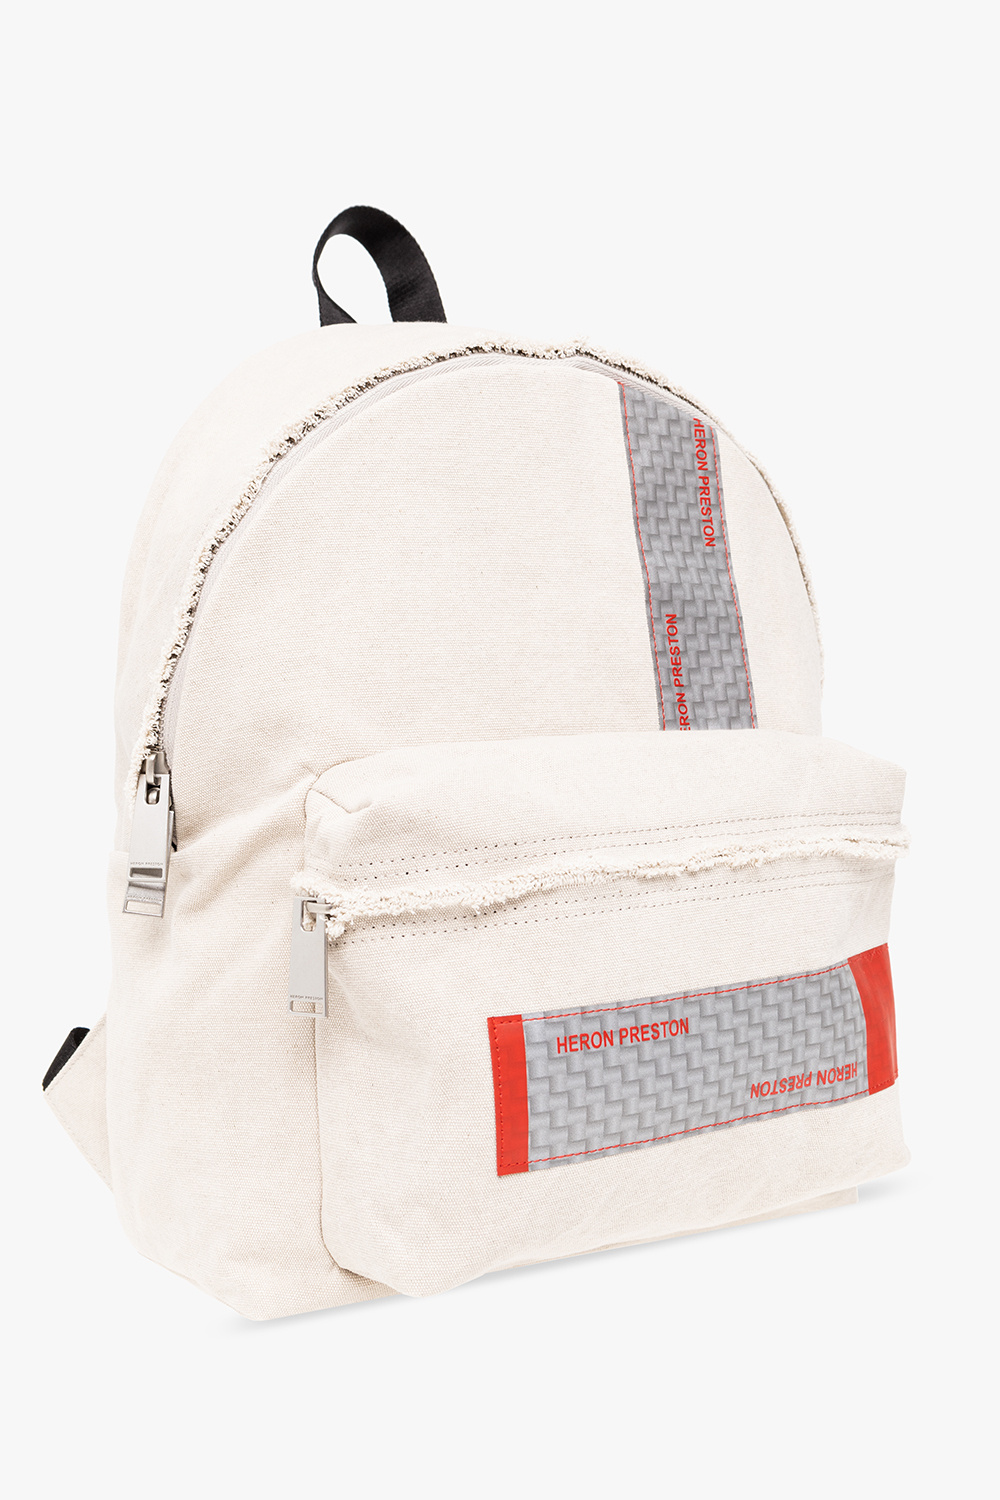 Heron Preston backpack DePaule with logo